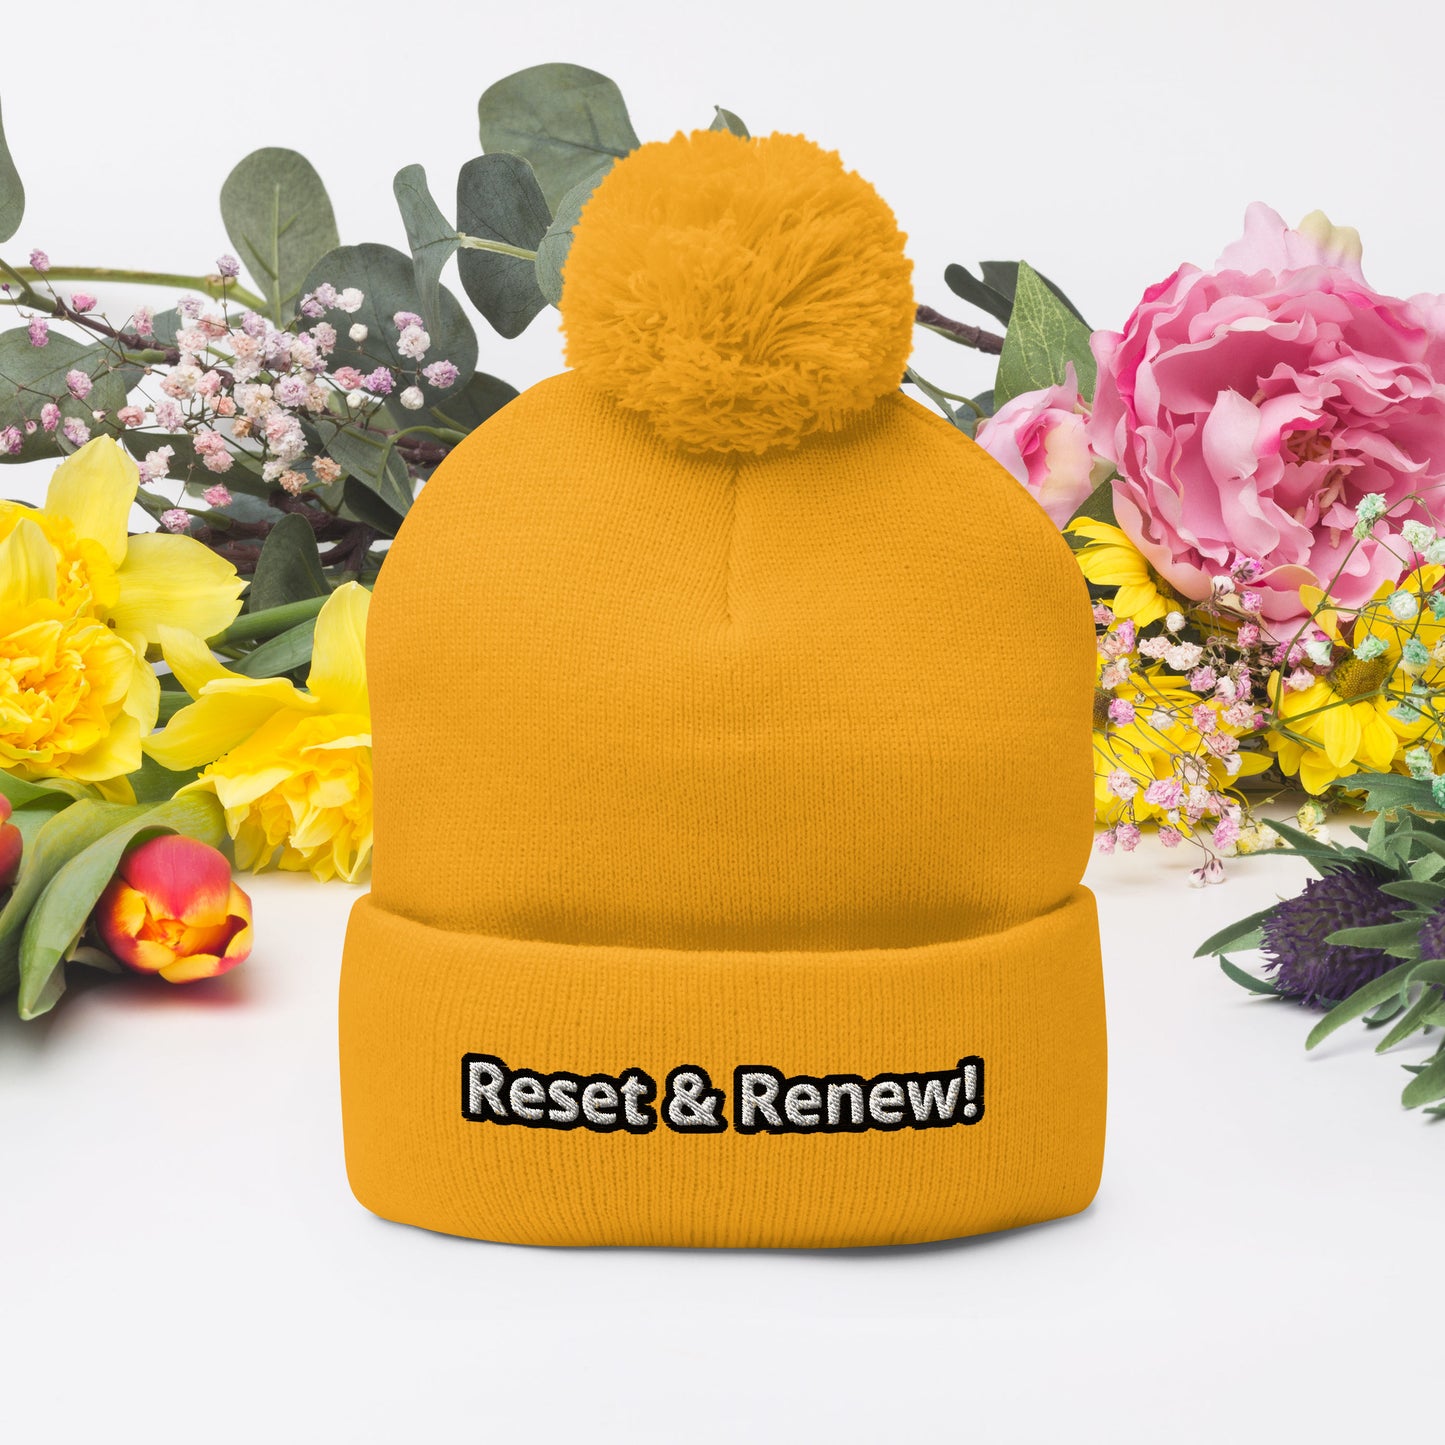 Reset & Renew! Pom-Pom Beanie